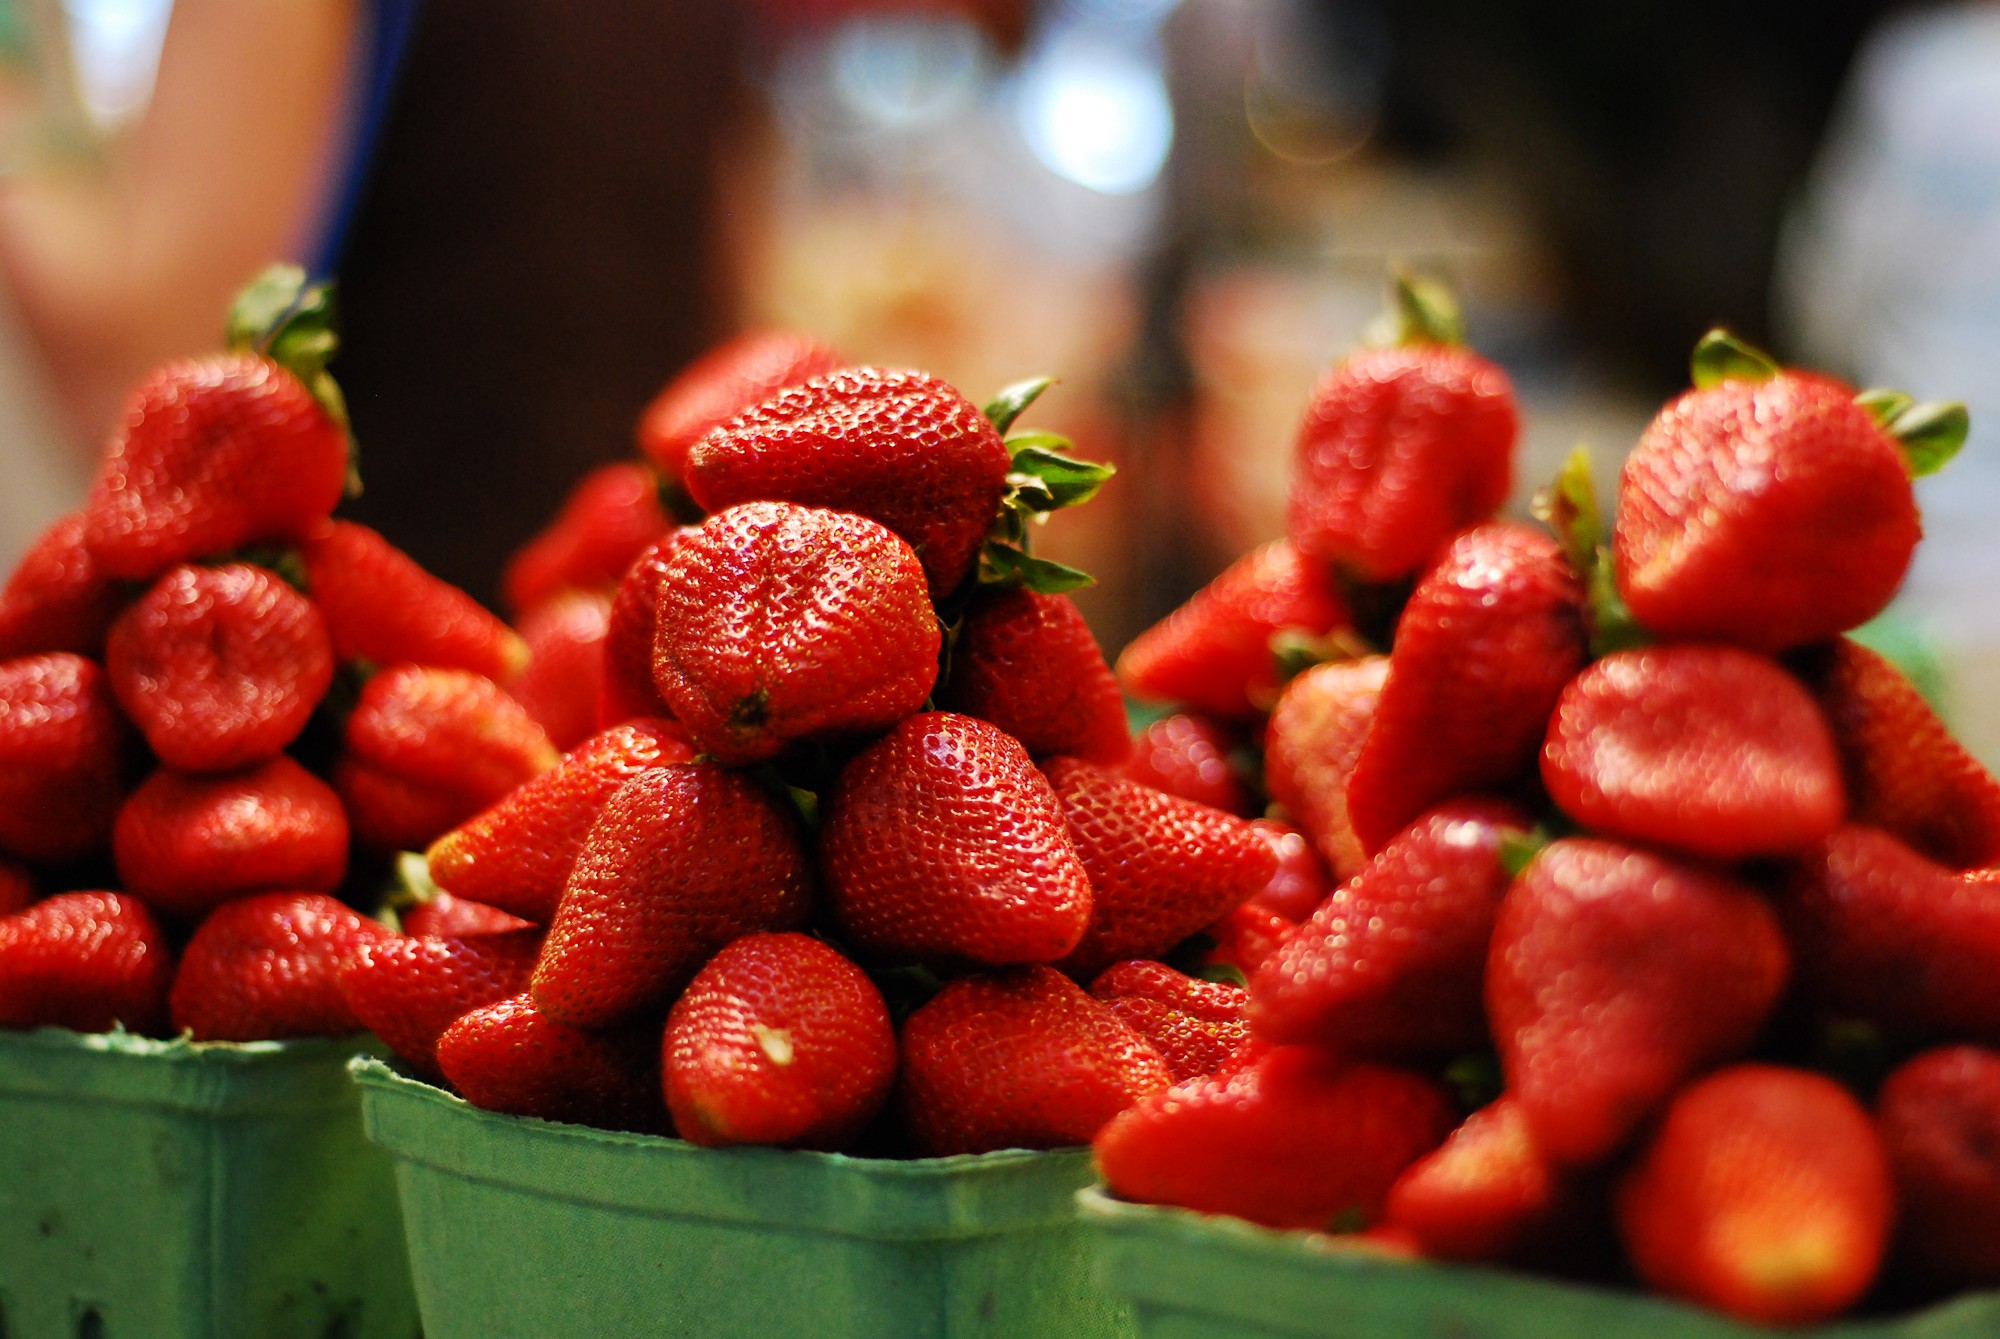 General 2000x1339 strawberries fruit food berries